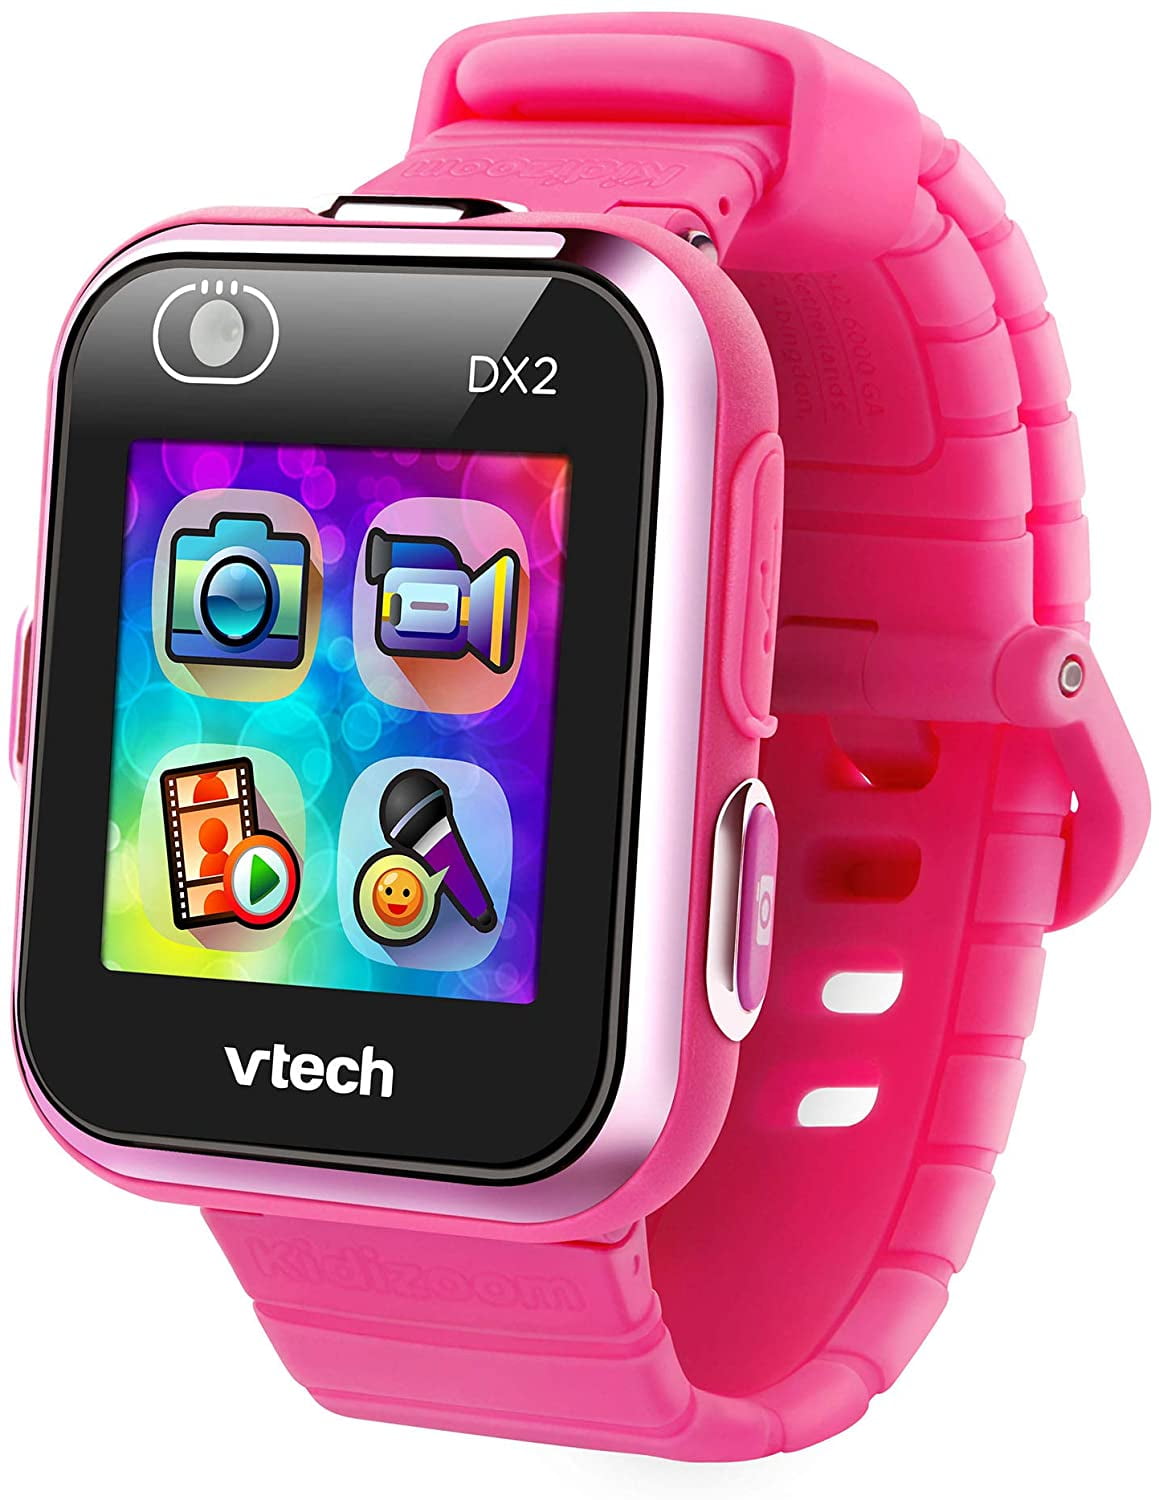 VTech Kidizoom DX Vivid Purple Smartwatch for sale online 80171650 